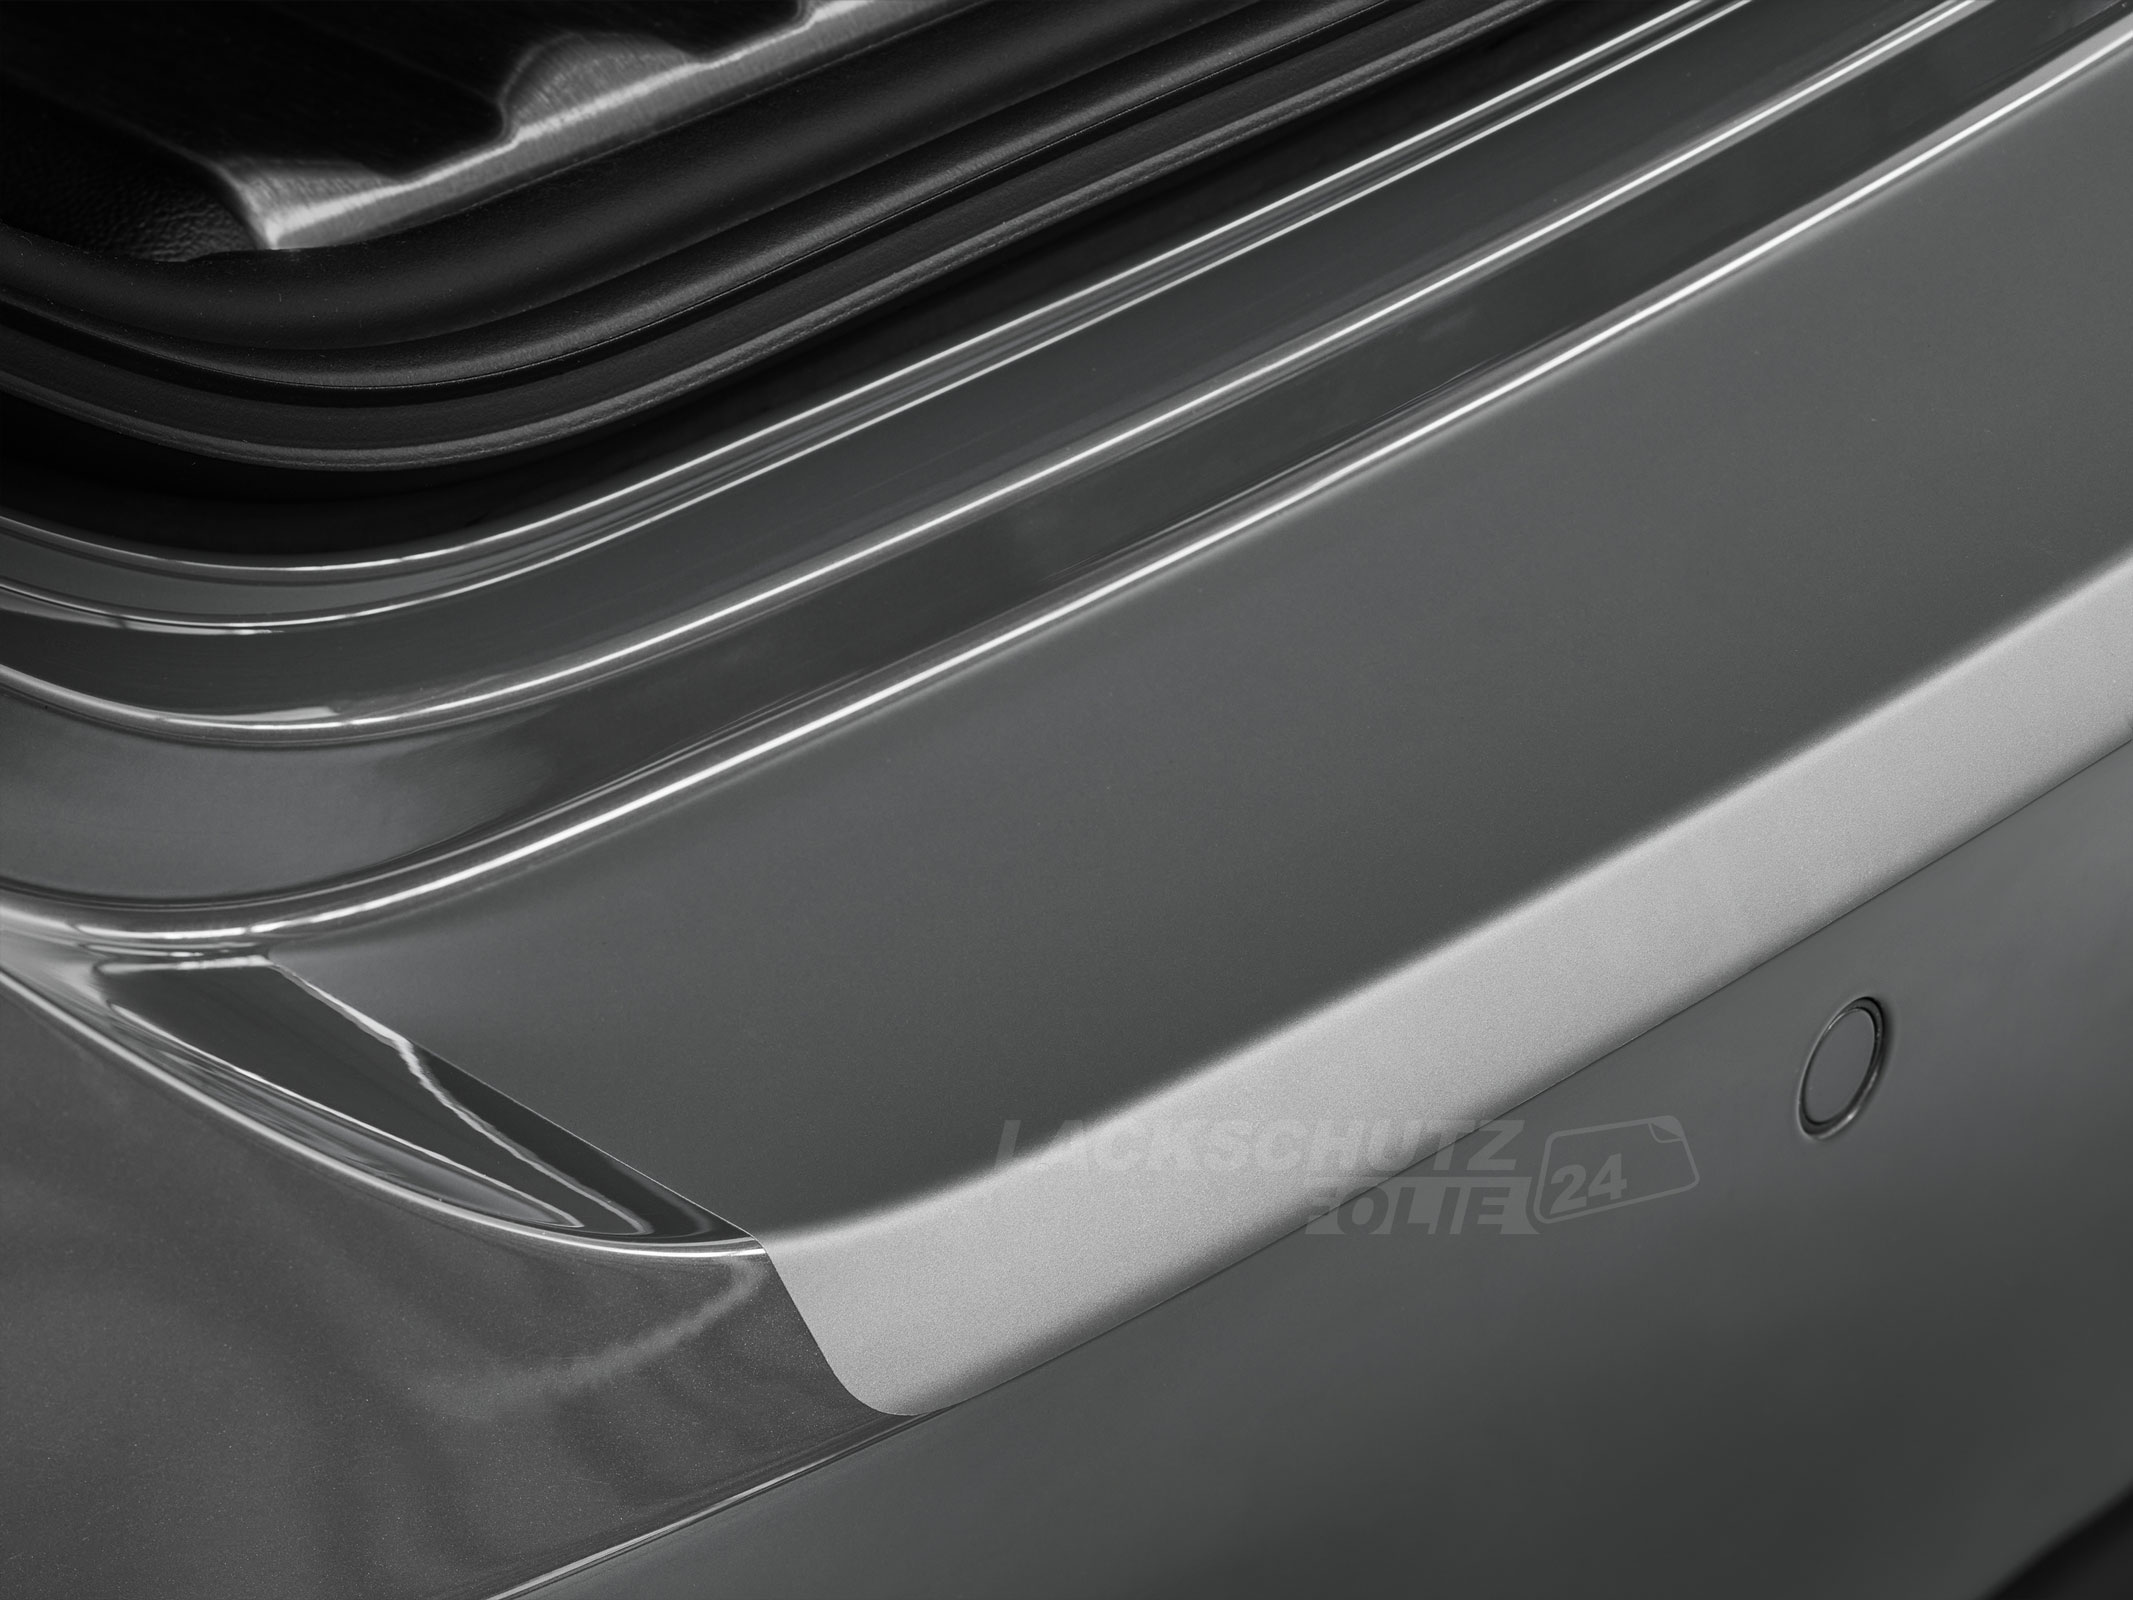 Ladekantenschutzfolie - Transparent Glatt MATT 110 µm stark  für Volvo XC40 ab BJ 03/2018